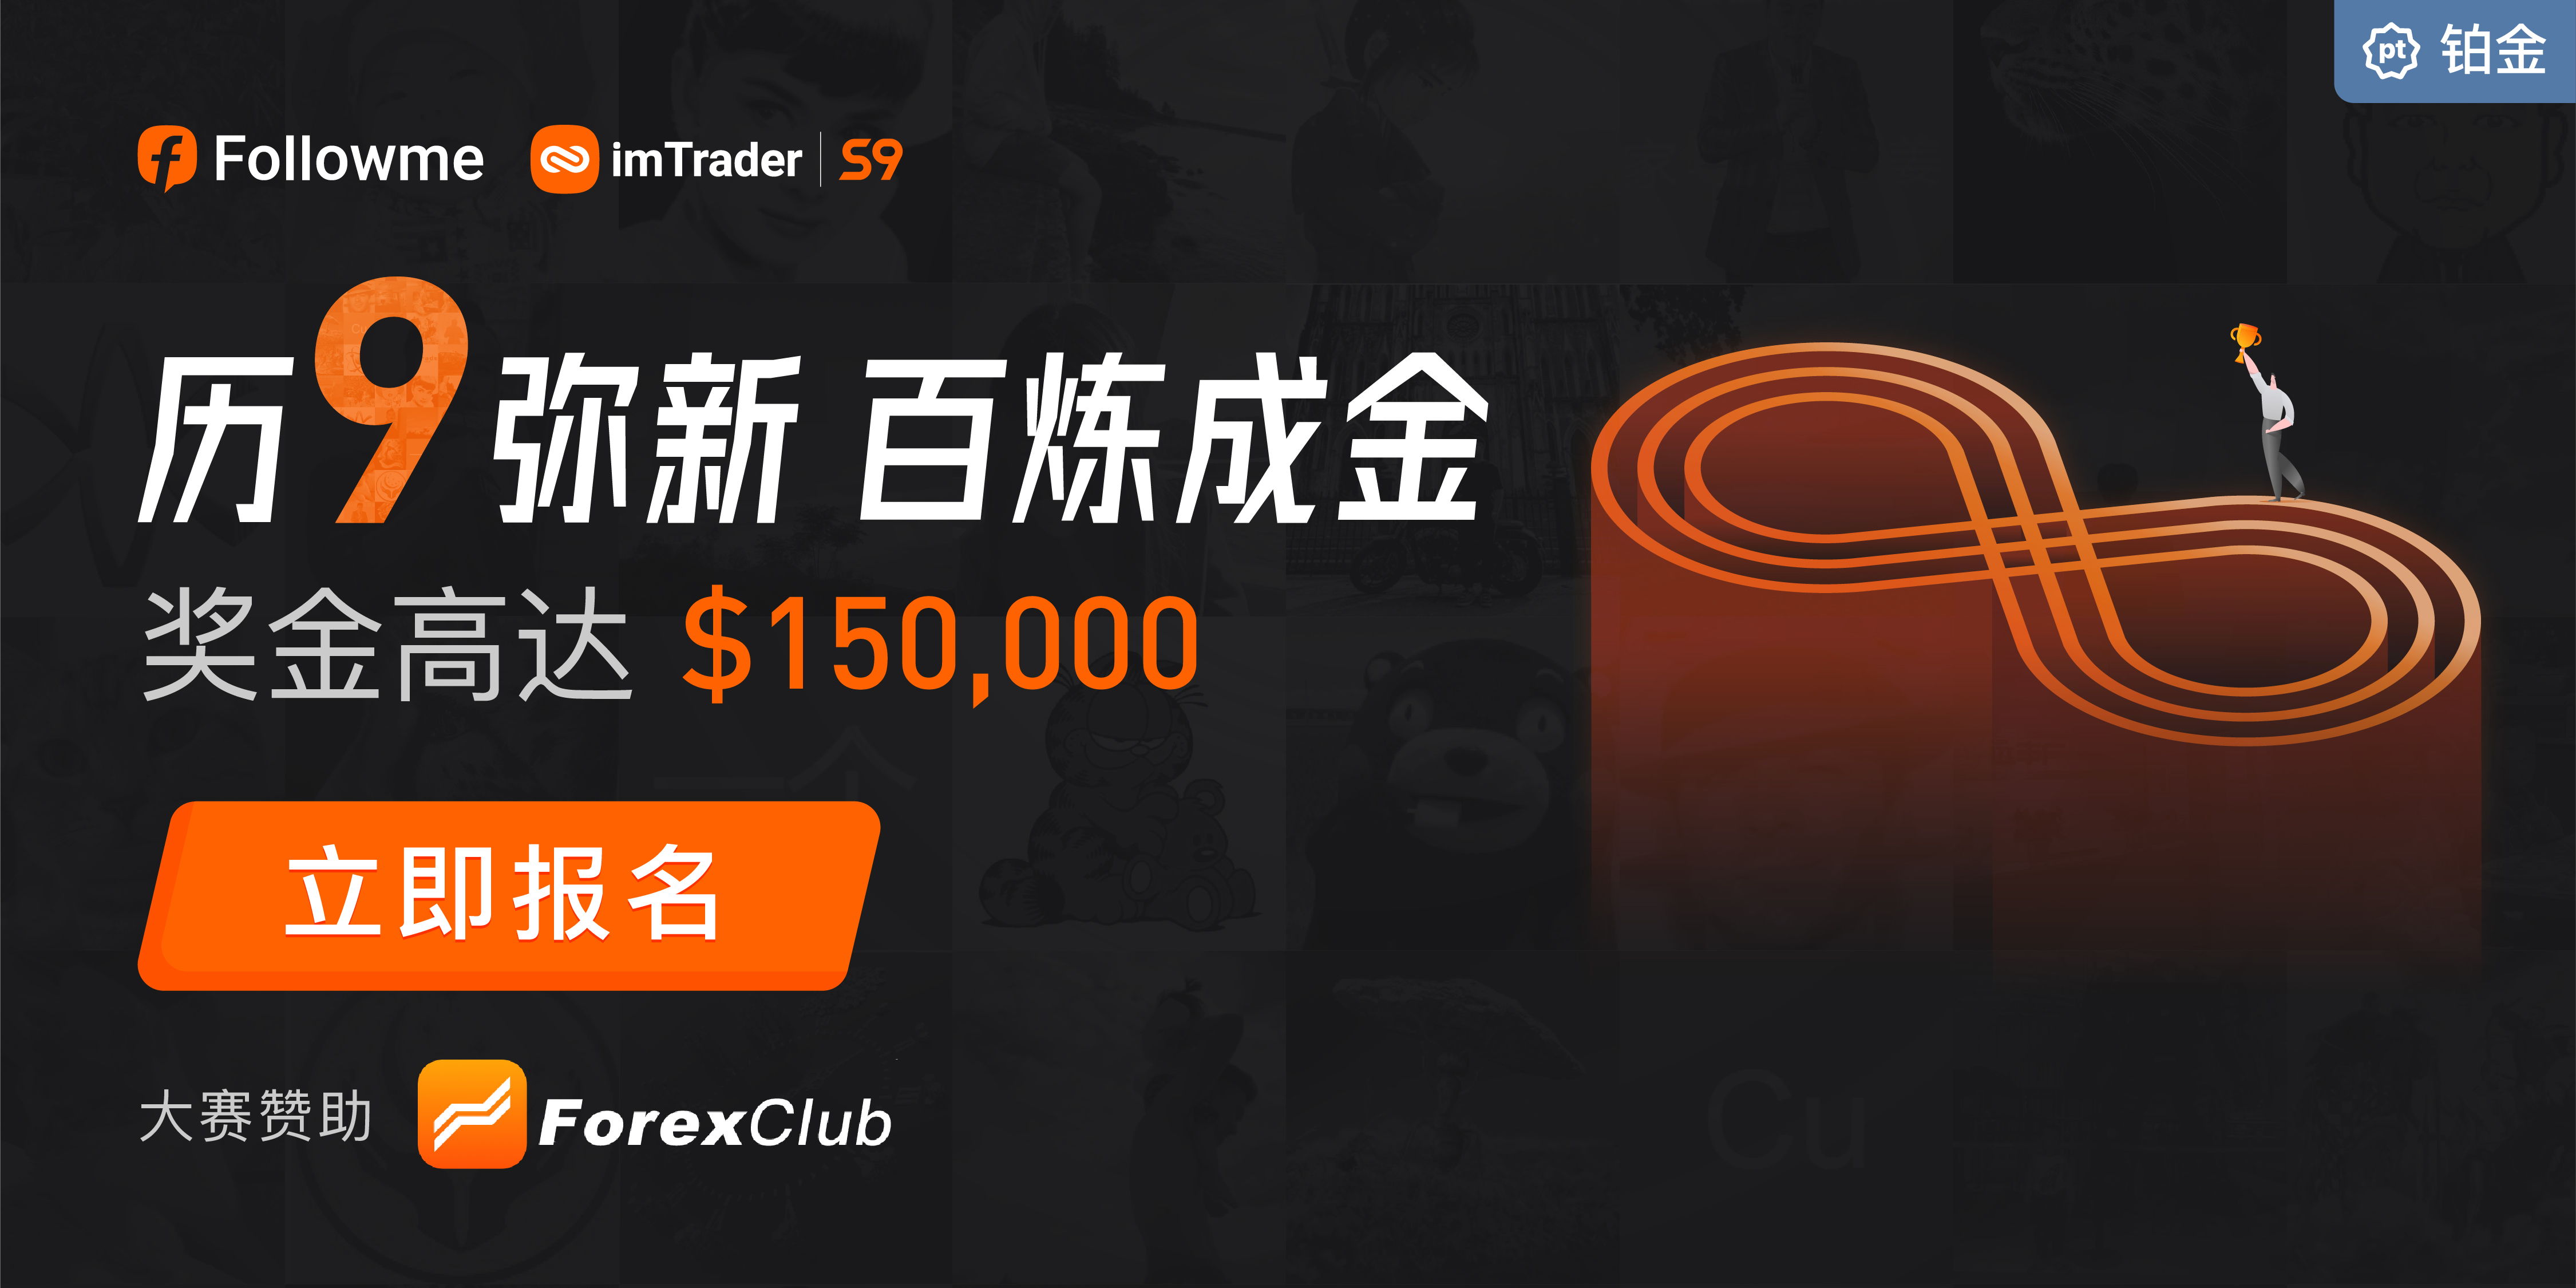 大赛已突破 2,500 个账户参赛，ForexClub 倾情赞助！